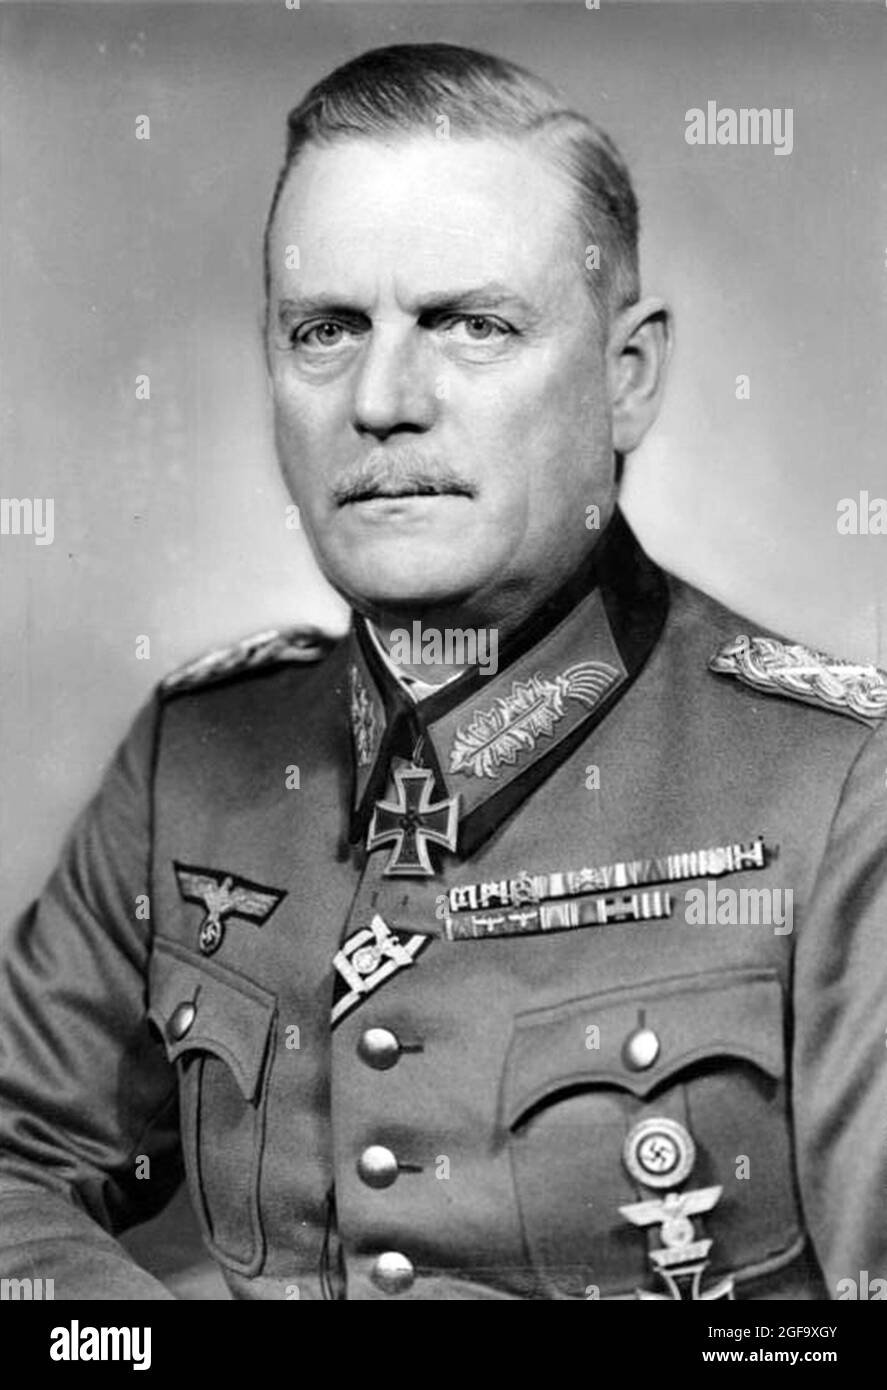 Un ritratto del capo dell'esercito tedesco delle forze armate Wilhelm Keitel. Fu catturato nel 1945, processato e impiccato a Norimberga nel 1946. Credit: Bundesarchiv tedesco Foto Stock